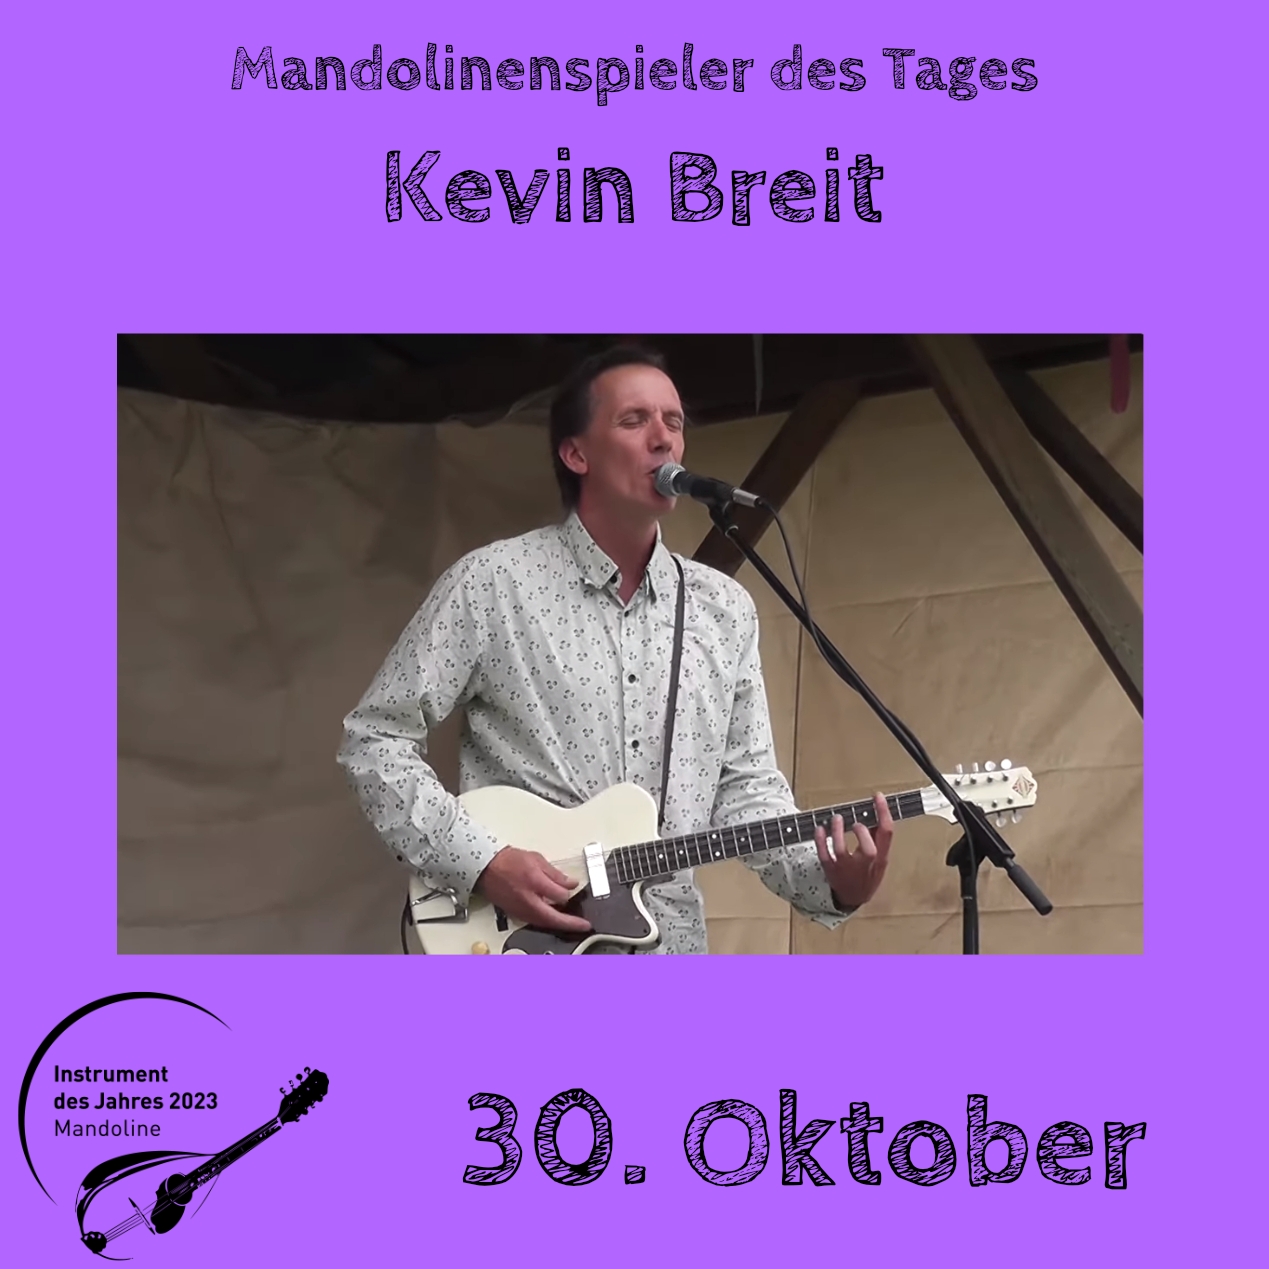 30. Oktober - Kevin Breit Instrument des Jahres 2023 Mandolinenspieler Mandolinenspielerin des Tages